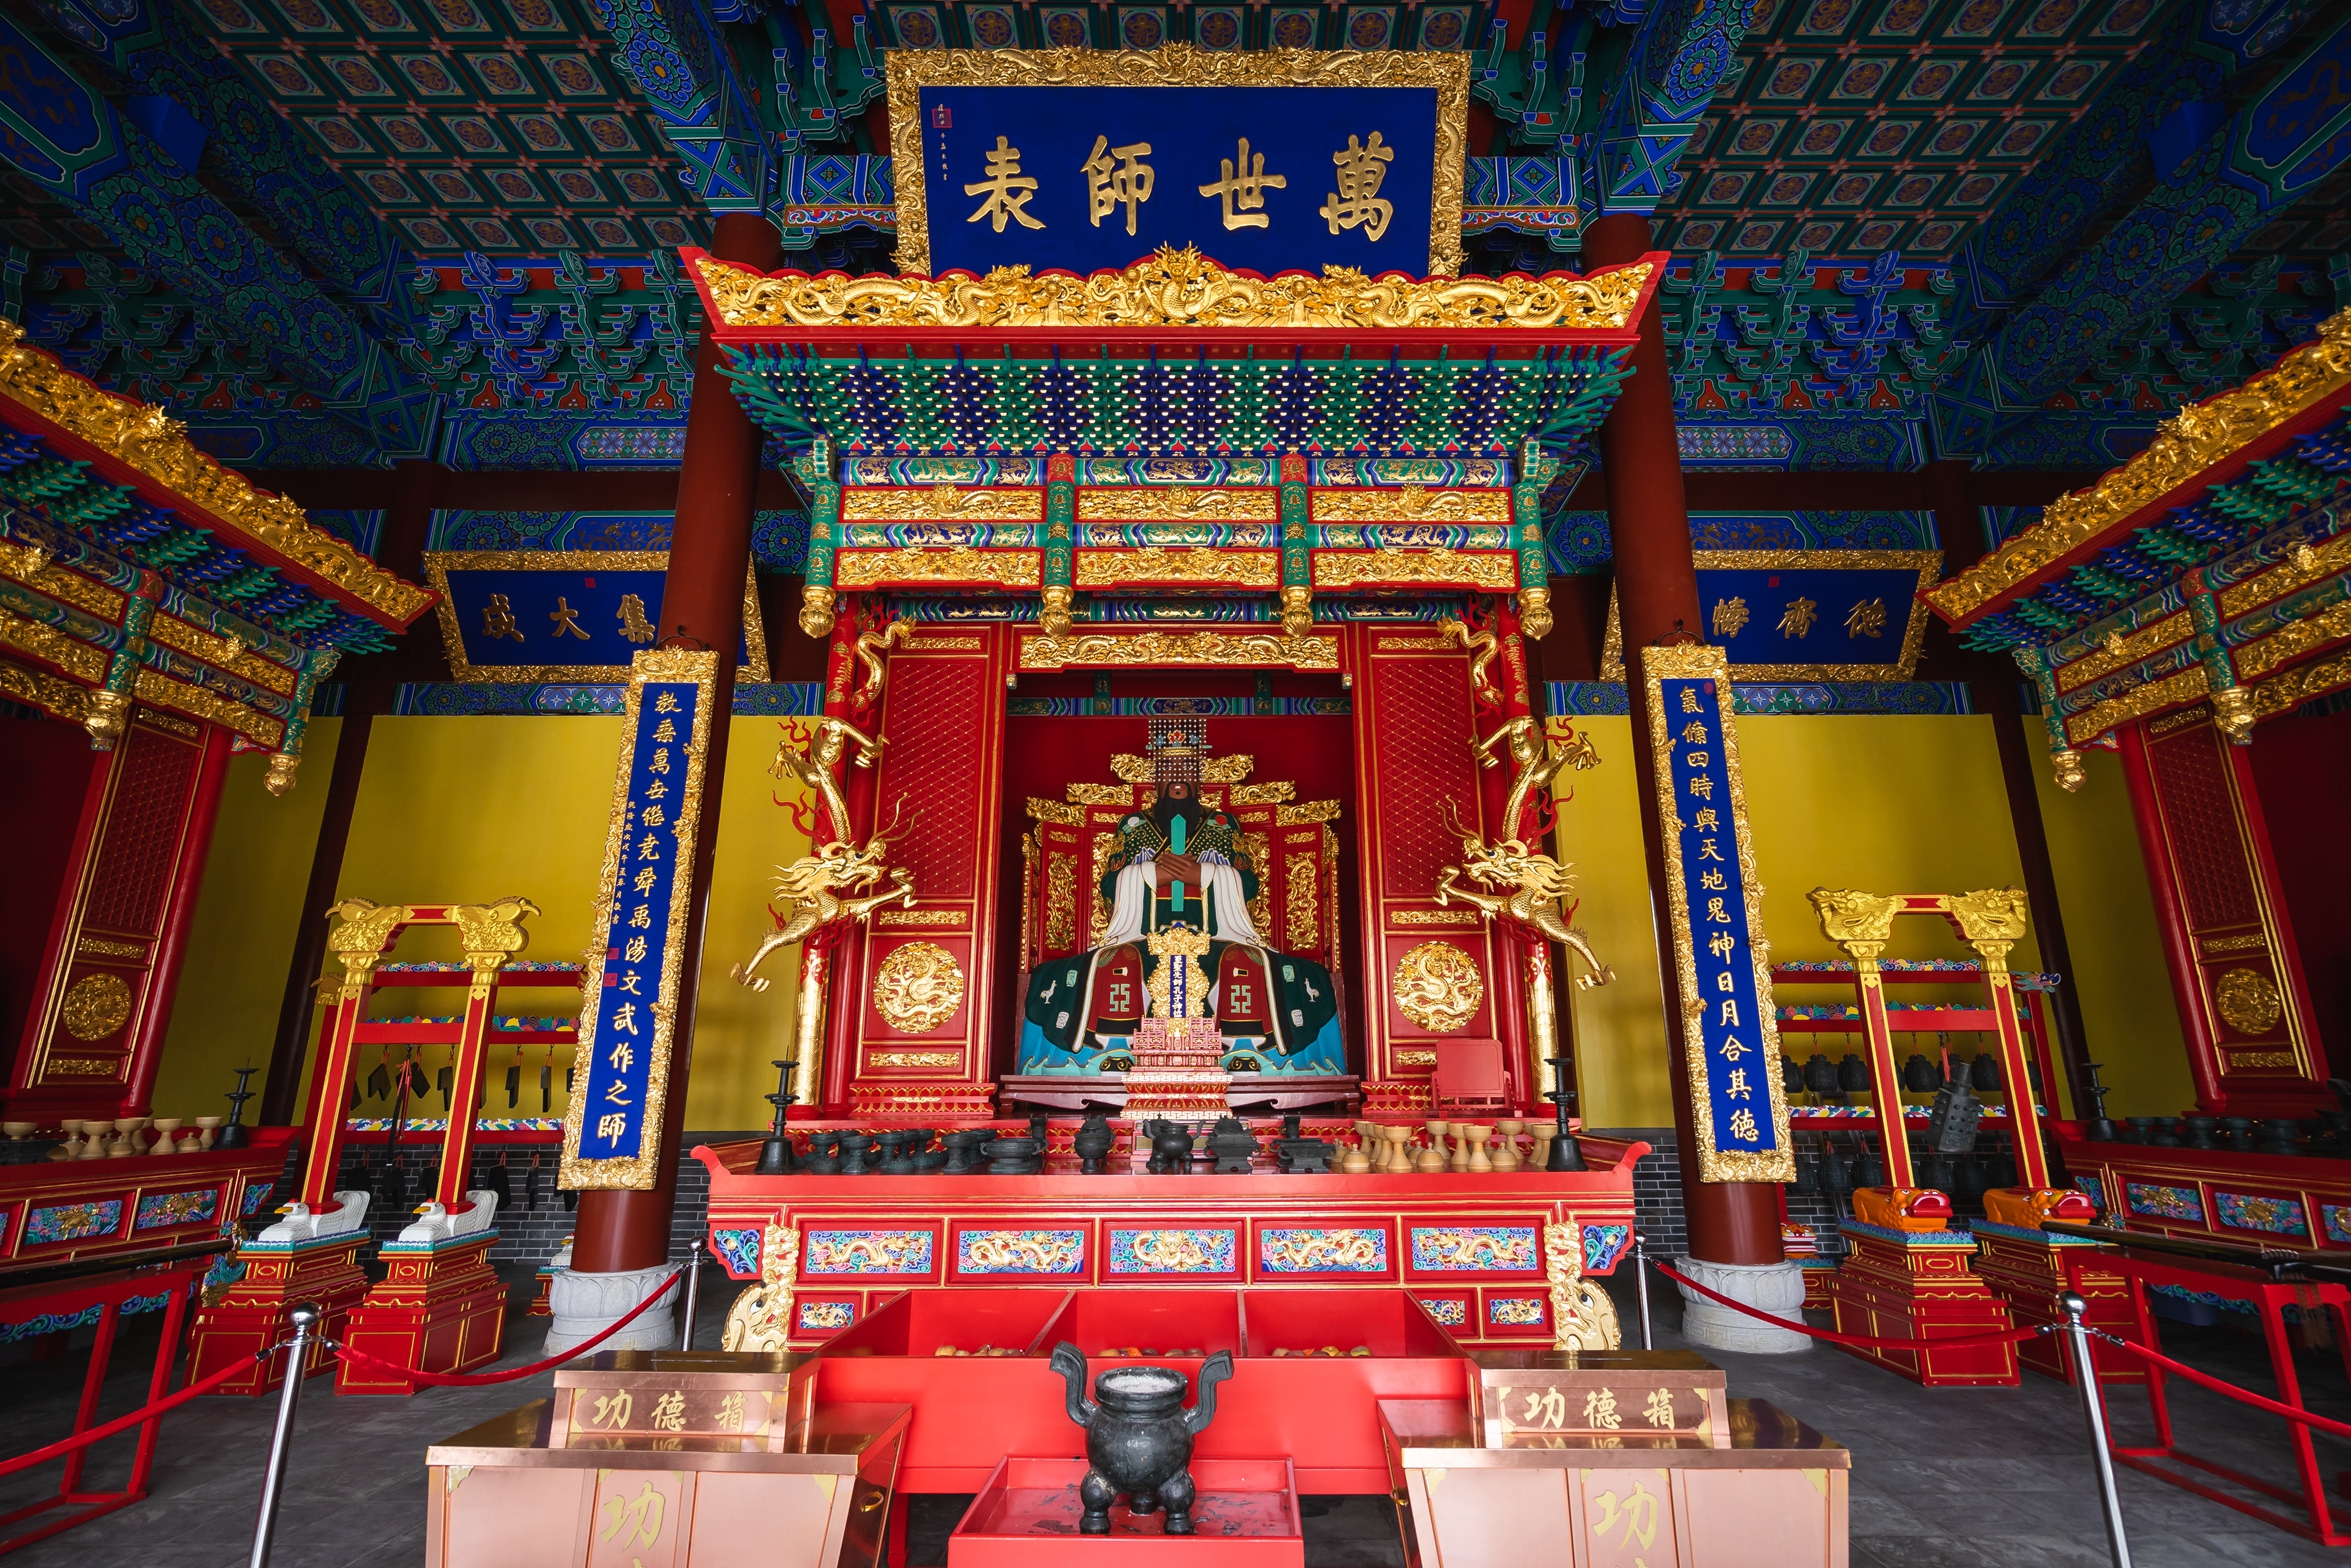 孔子文化城 位于湛江市遂溪县城西南方向,总面积约18000亩,文化